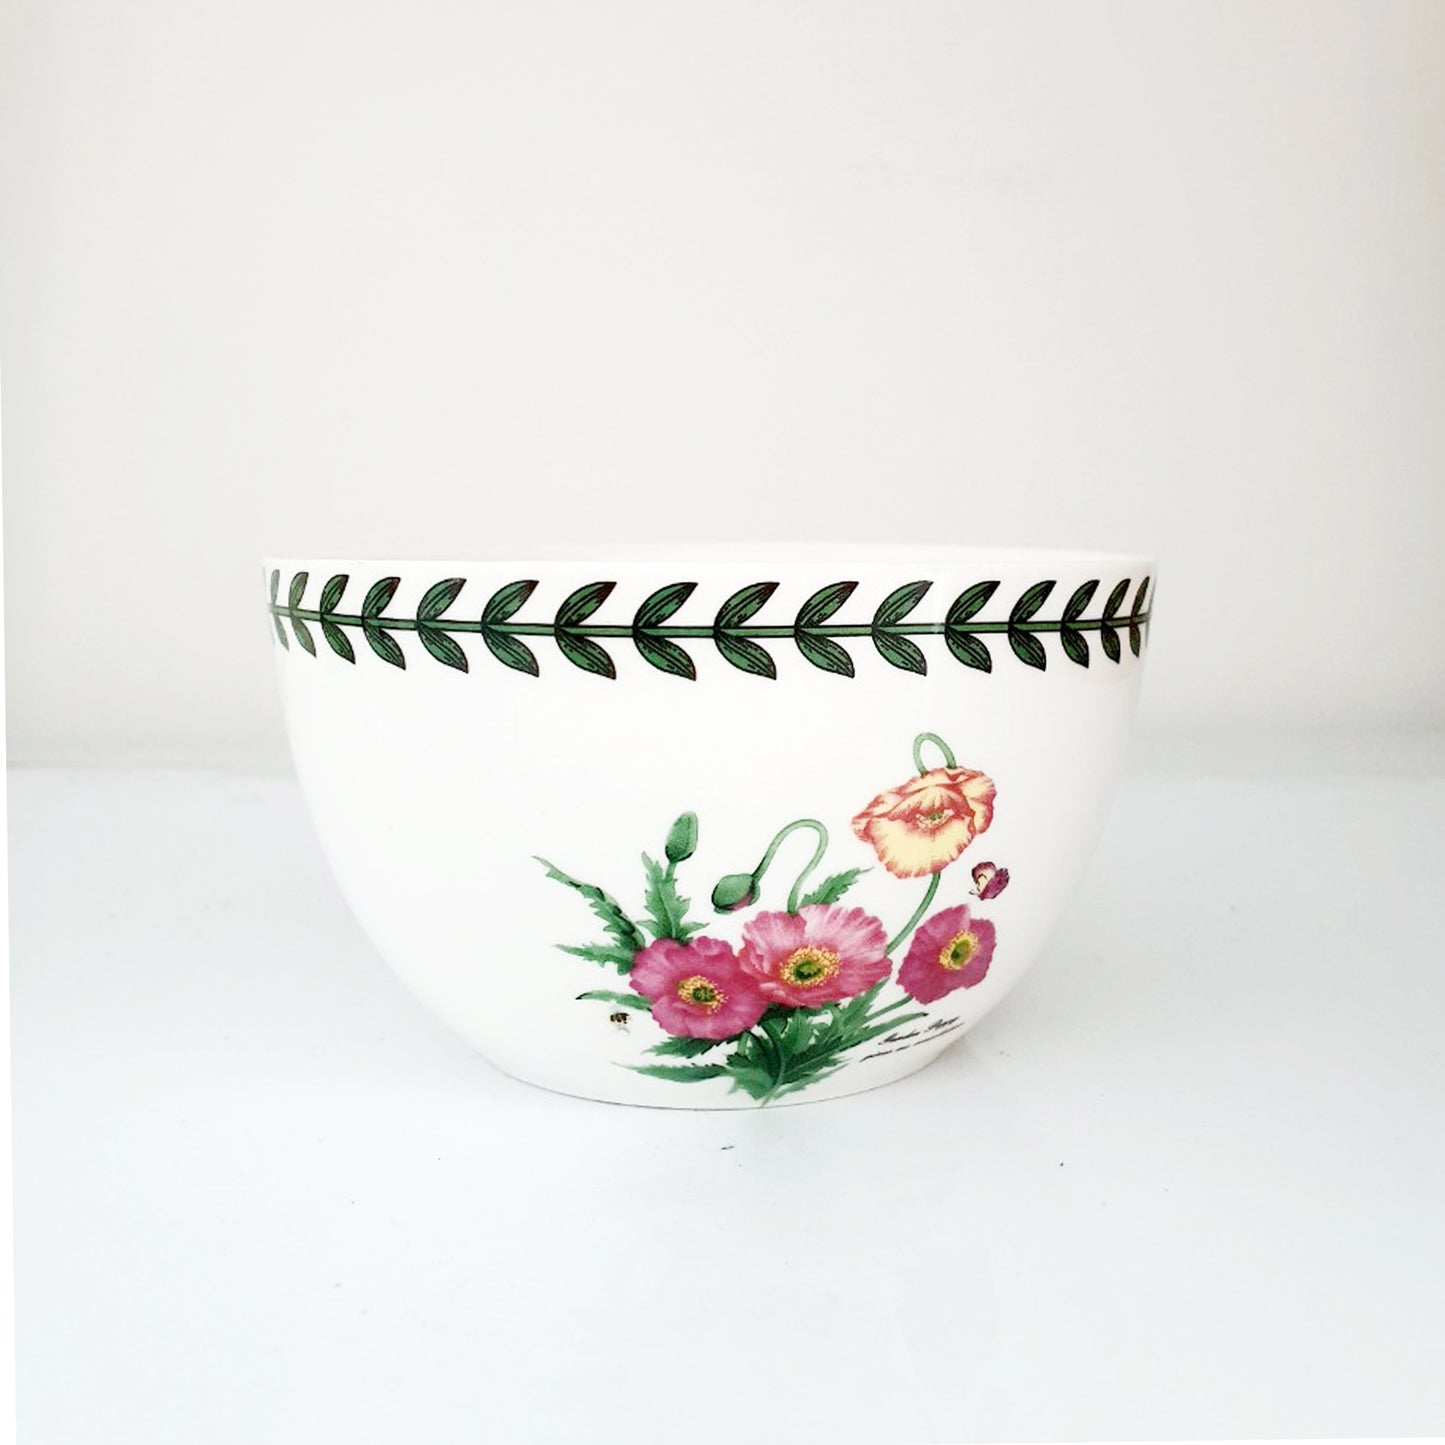 Floral Garden Rice Bowl  𝟒𝟎% 𝐎𝐅𝐅